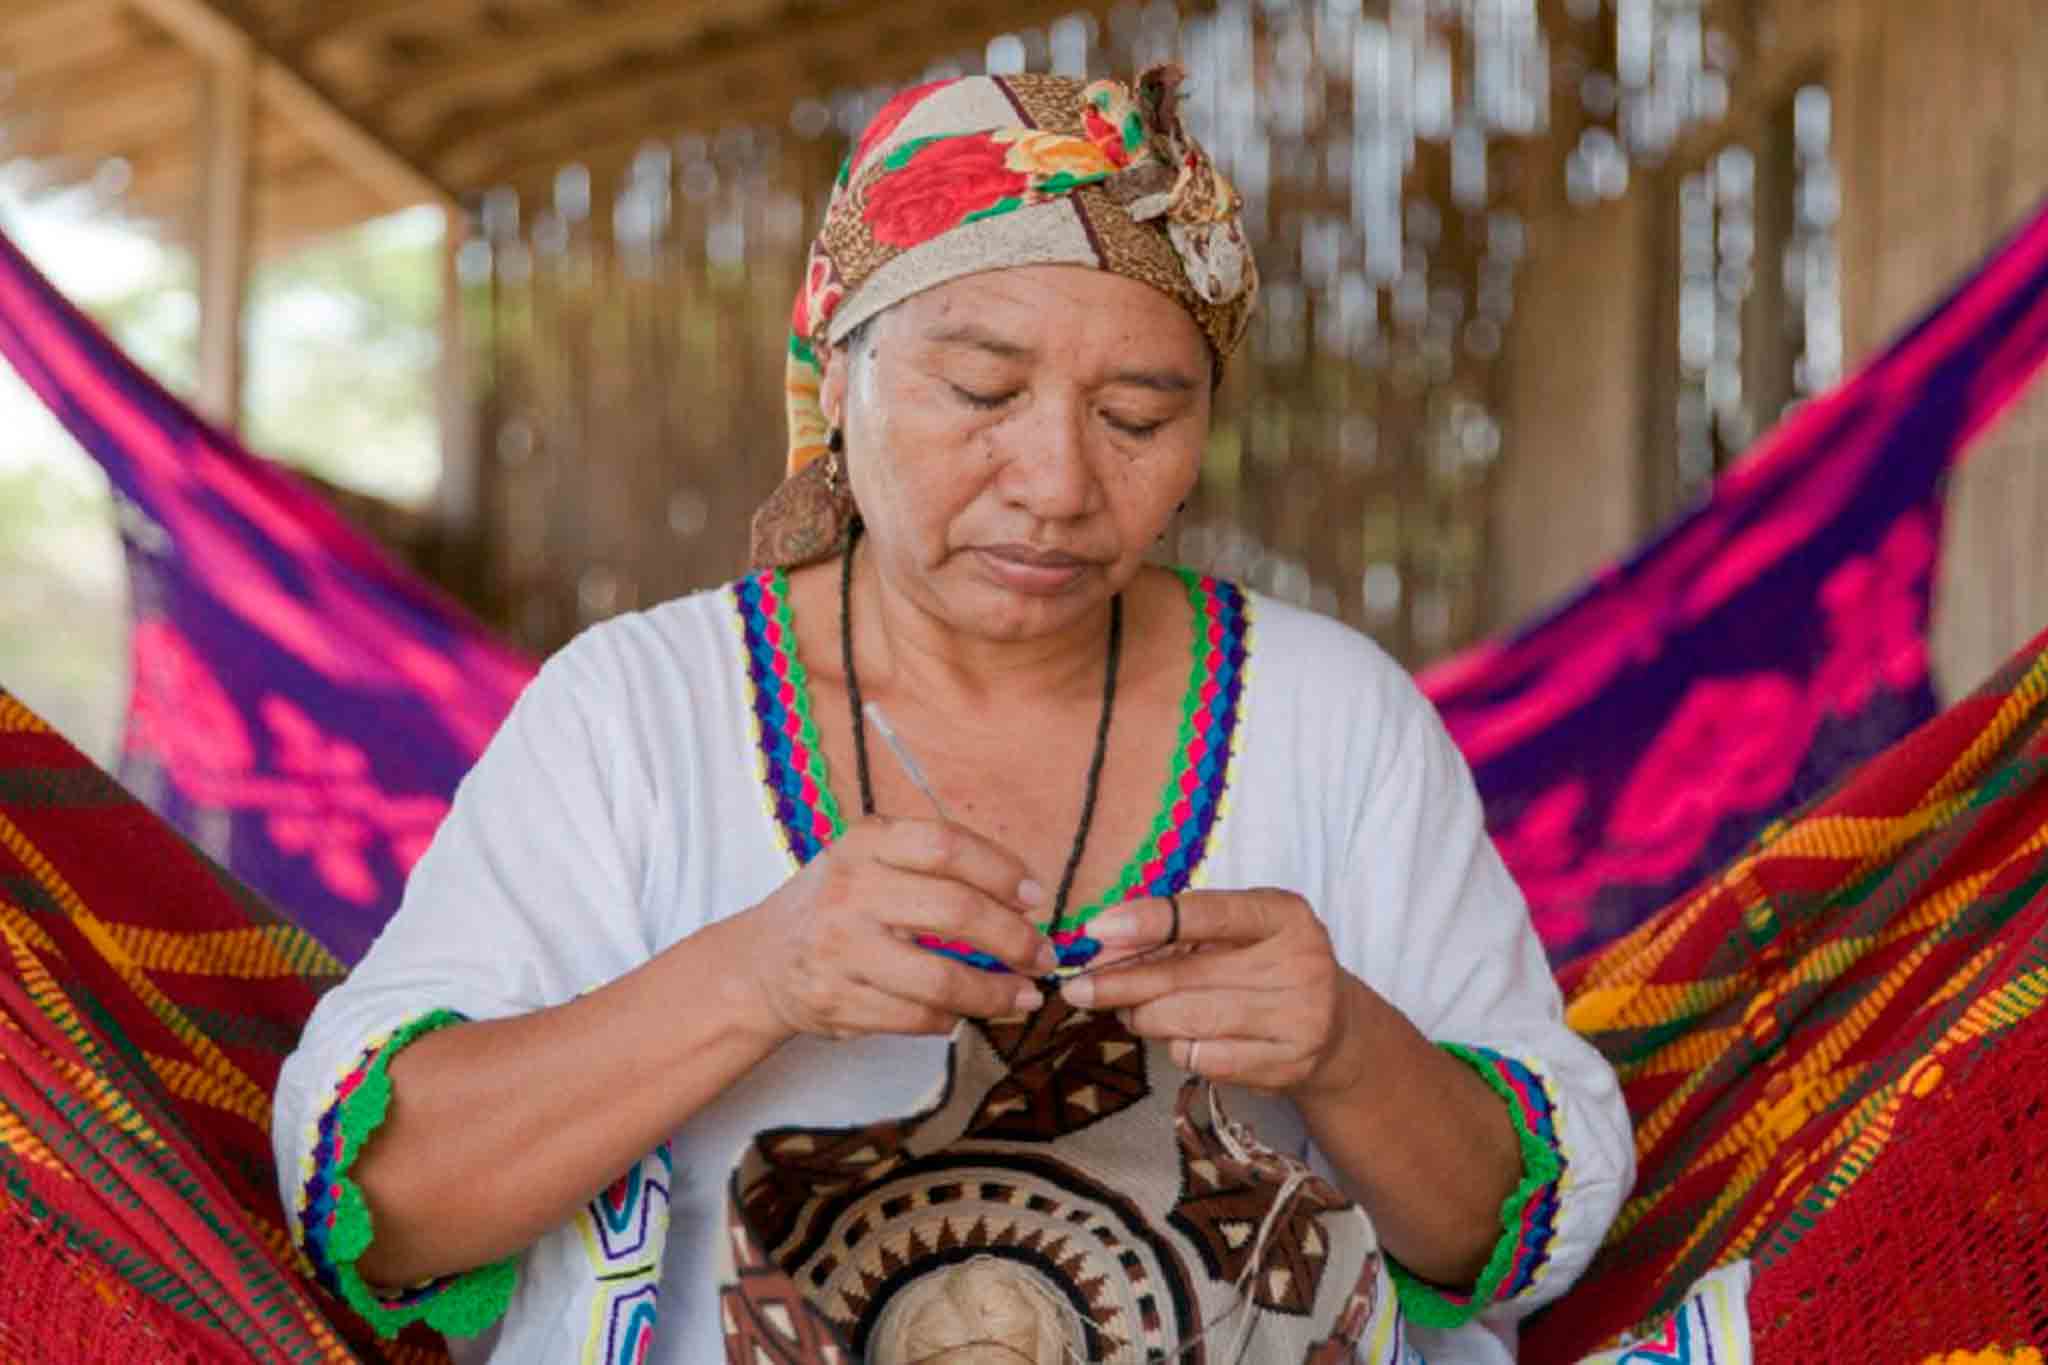 Rebaja bienestar explosión El comercio artesanal en Colombia: ¿cómo apoyarlo? – Lauty